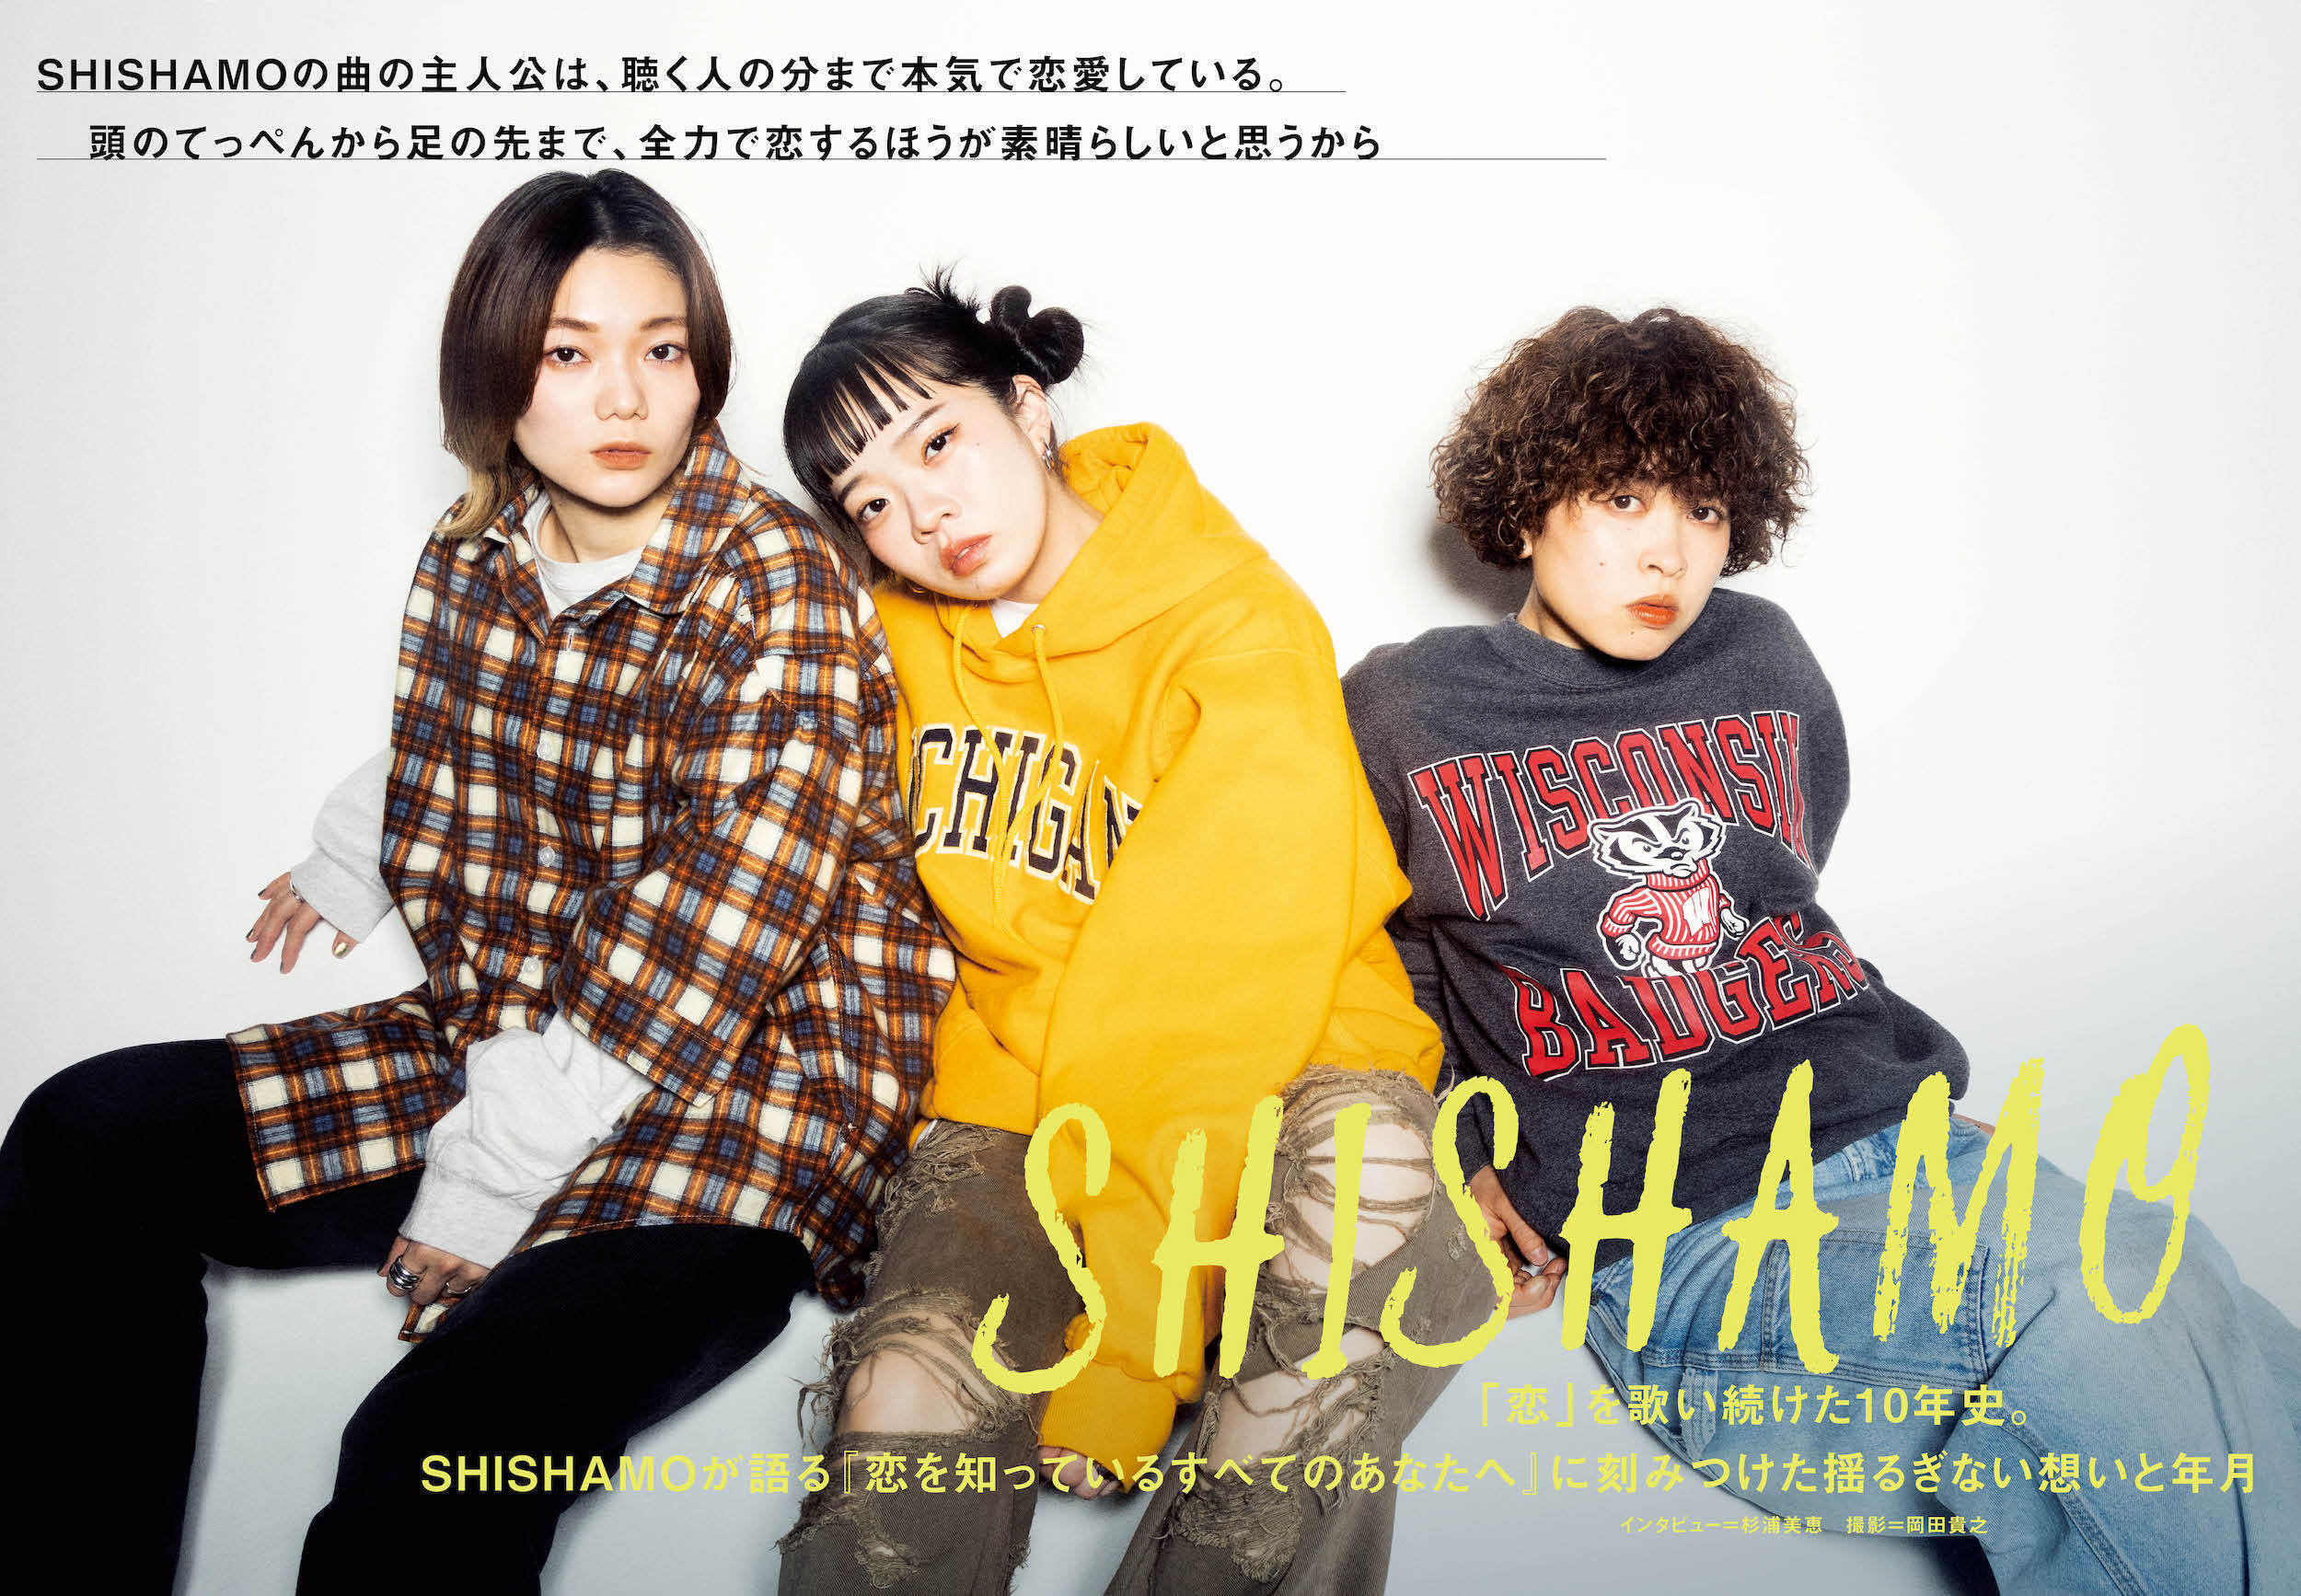 【JAPAN最新号】SHISHAMO、「恋」を歌い続けた10年史。SHISHAMOが語る『恋を知っているすべてのあなたへ』に刻みつけた揺るぎない想いと年月